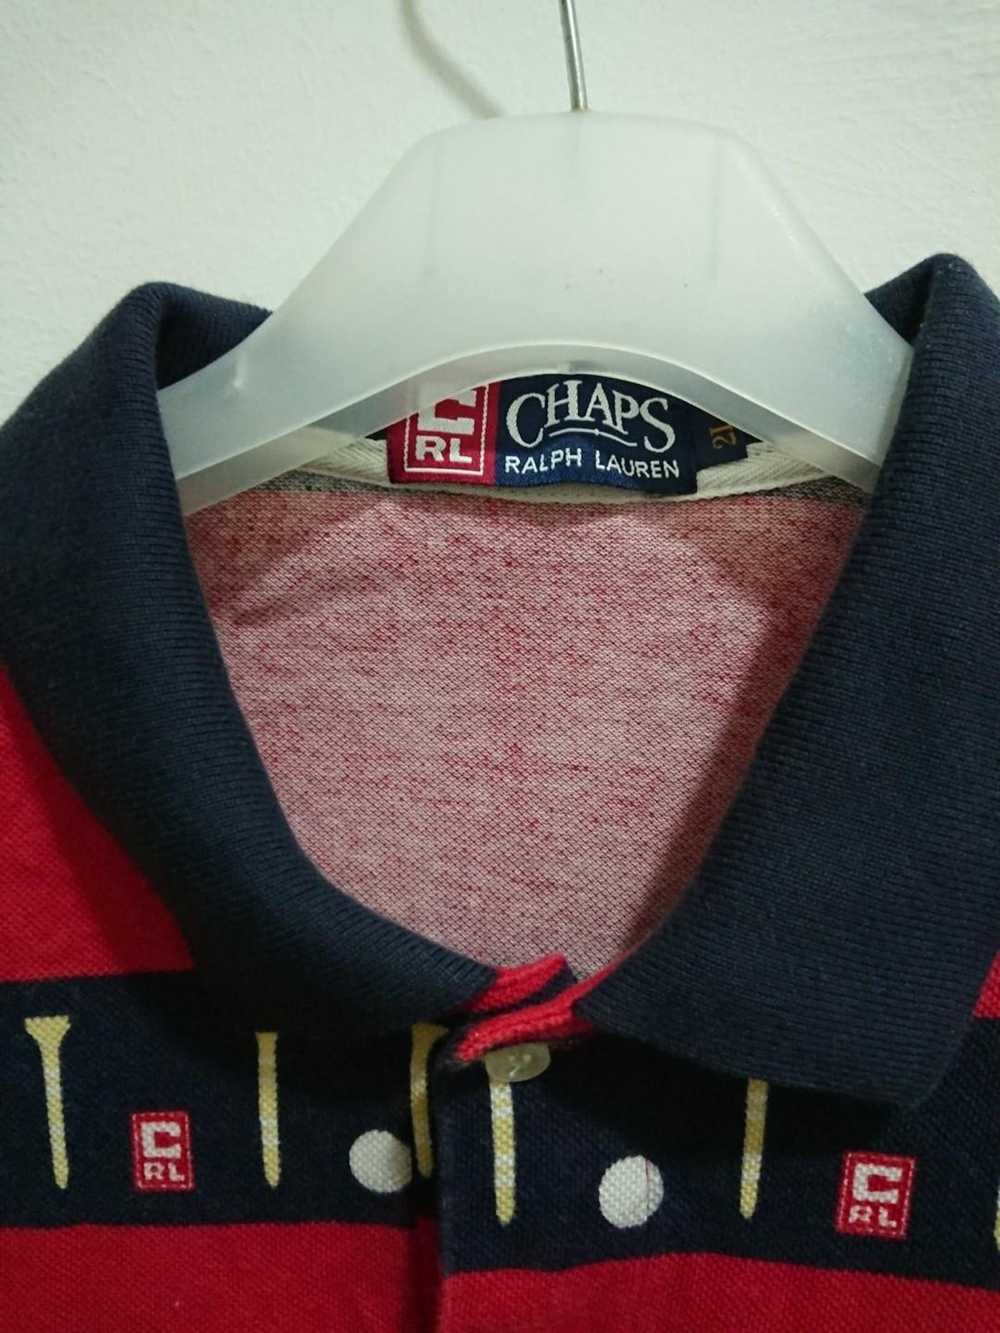 Chaps Ralph Lauren Chaps polo shirt size 2L - image 3